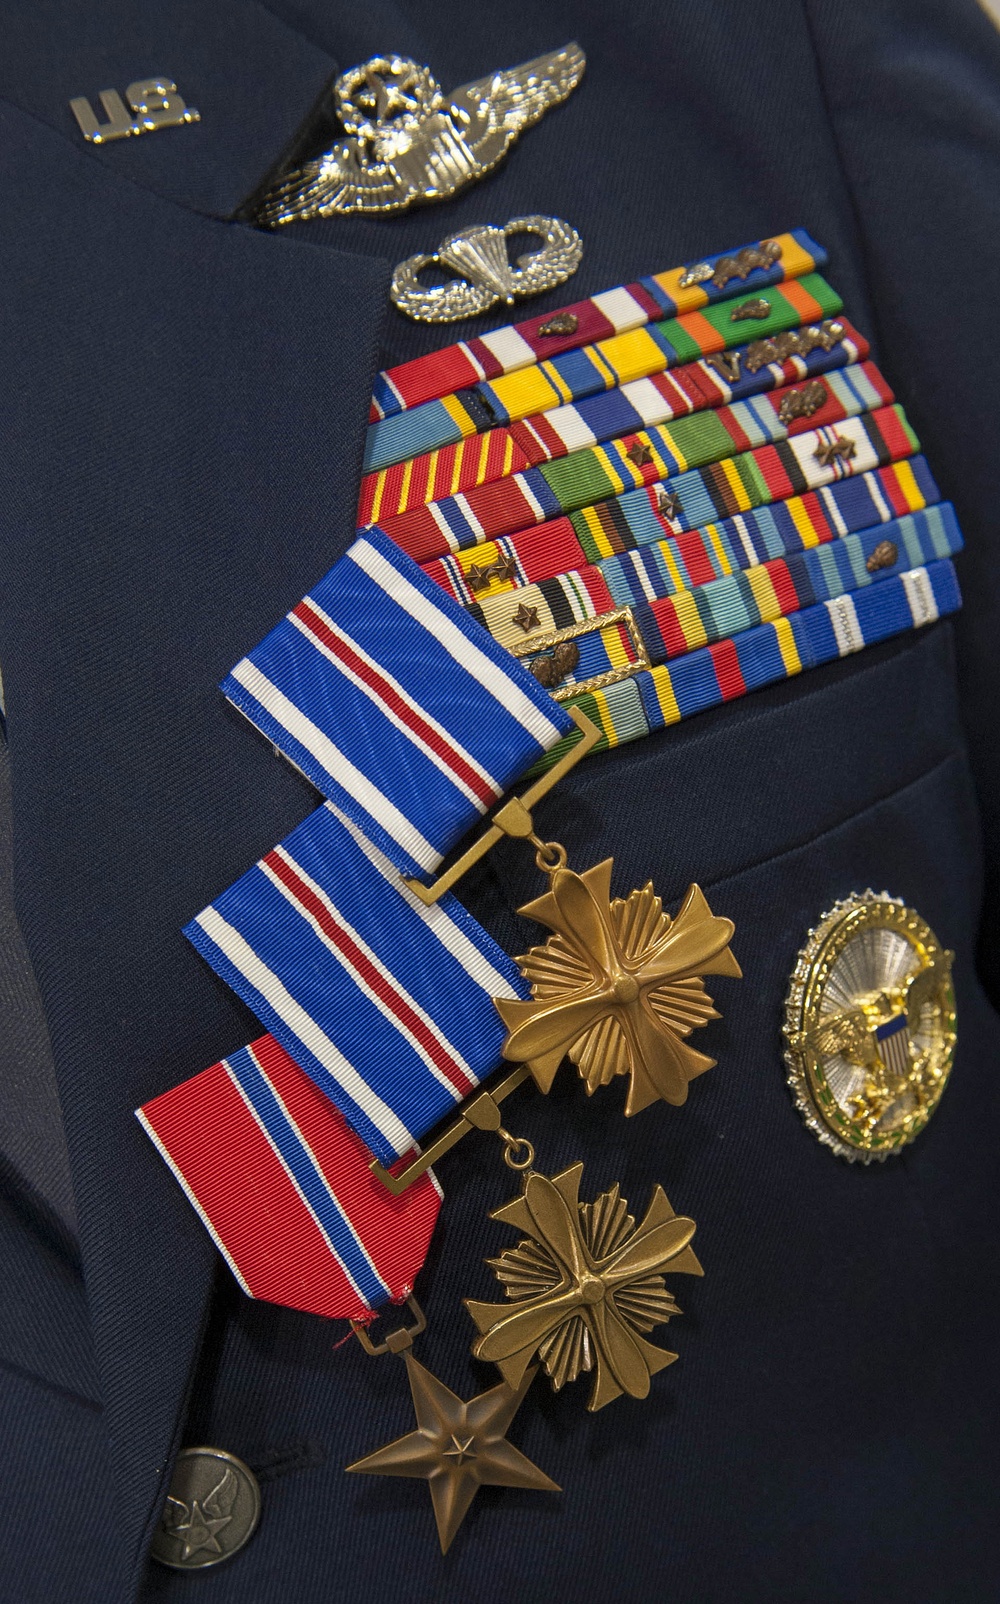 Distinguished Flying Cross Medal presentation